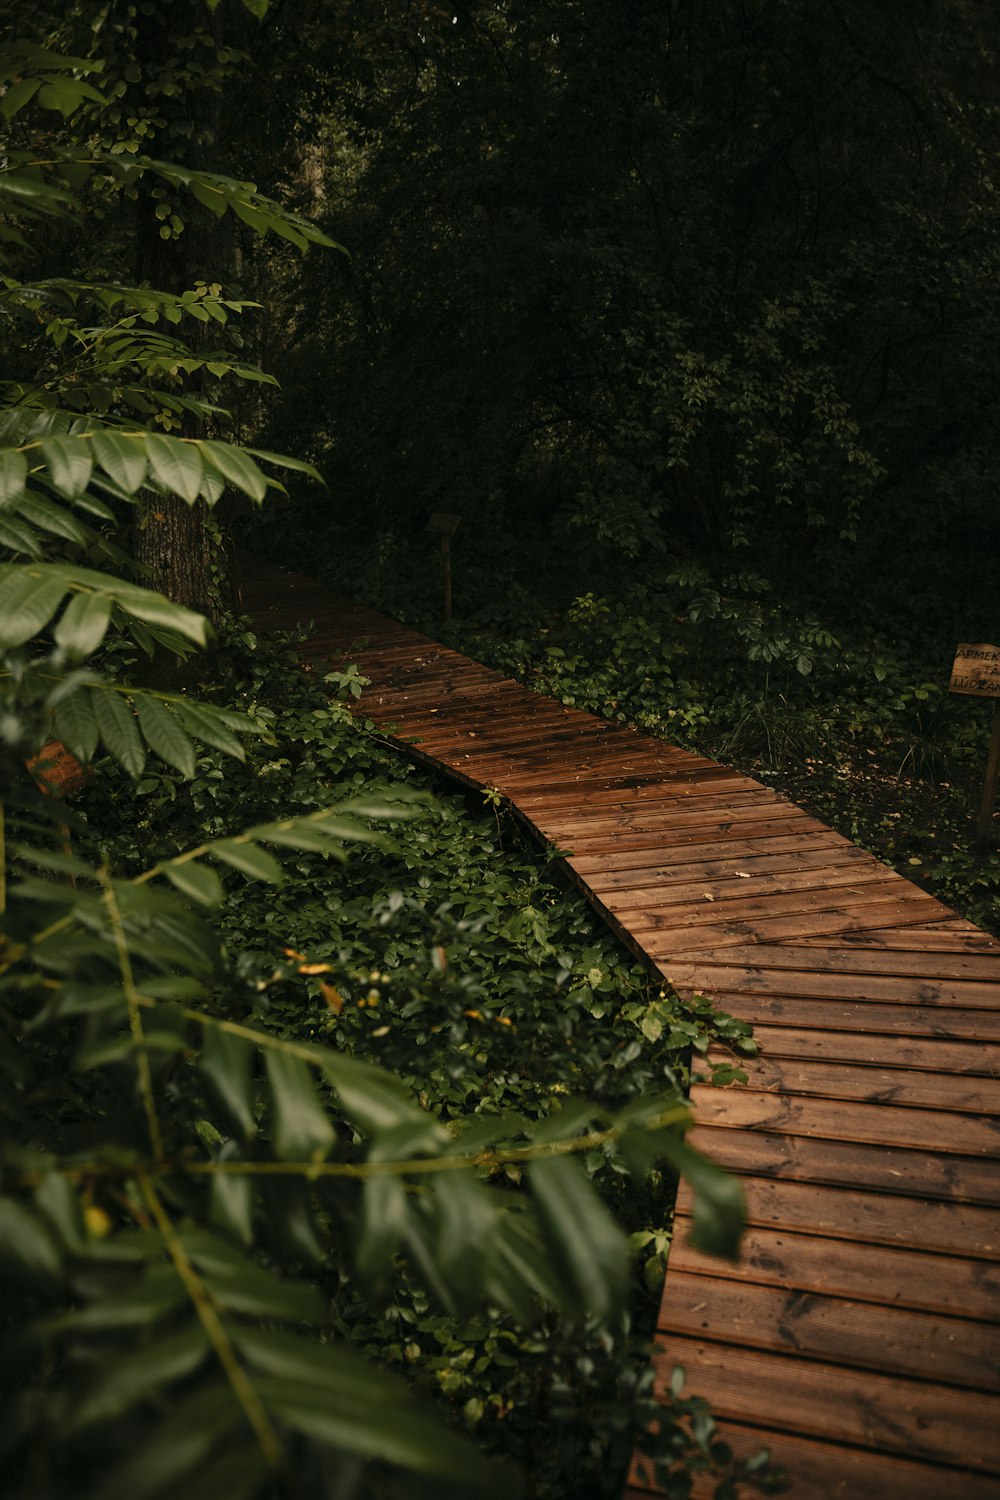 brown wooden pathway between green plants